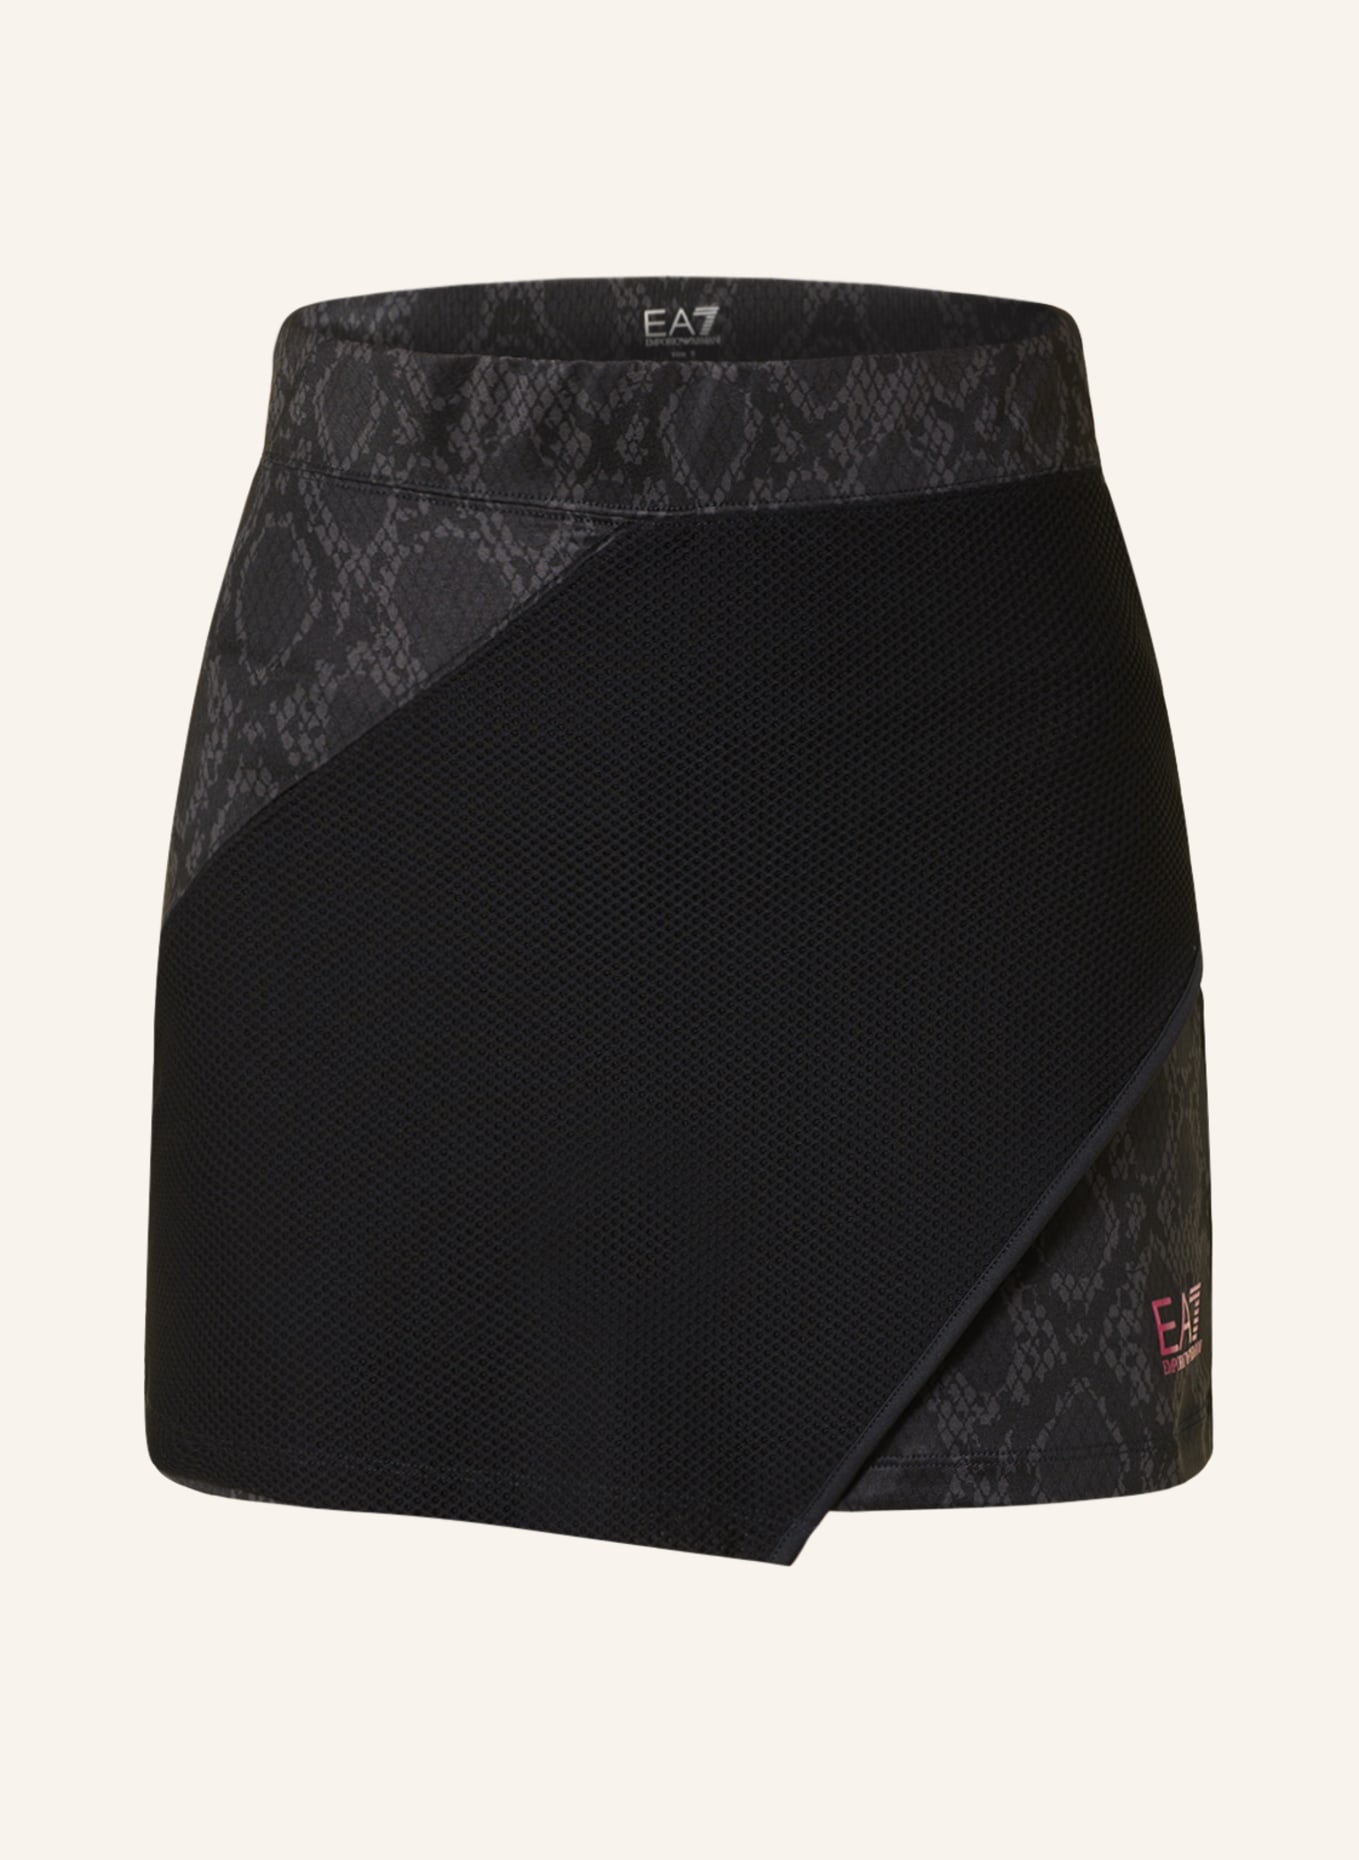 EA7 EMPORIO ARMANI Tennis skirt, Color: BLACK/ DARK GRAY (Image 1)